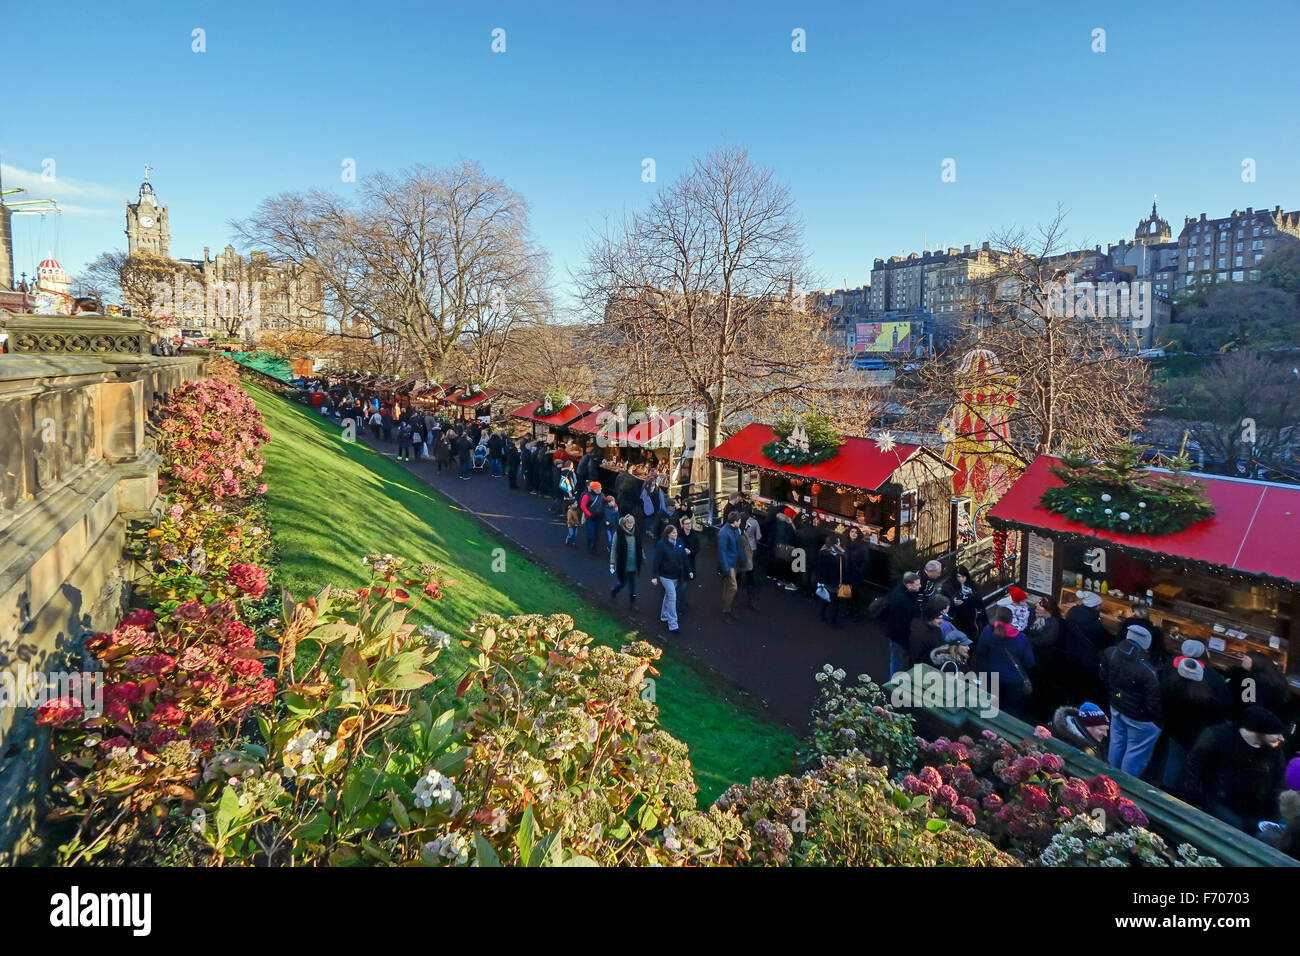 Marché de Noël 2015 d'Édimbourg au Princes Gardens Edinburgh avec des stands vendant des biens et de l'Alimentation et boisson Banque D'Images